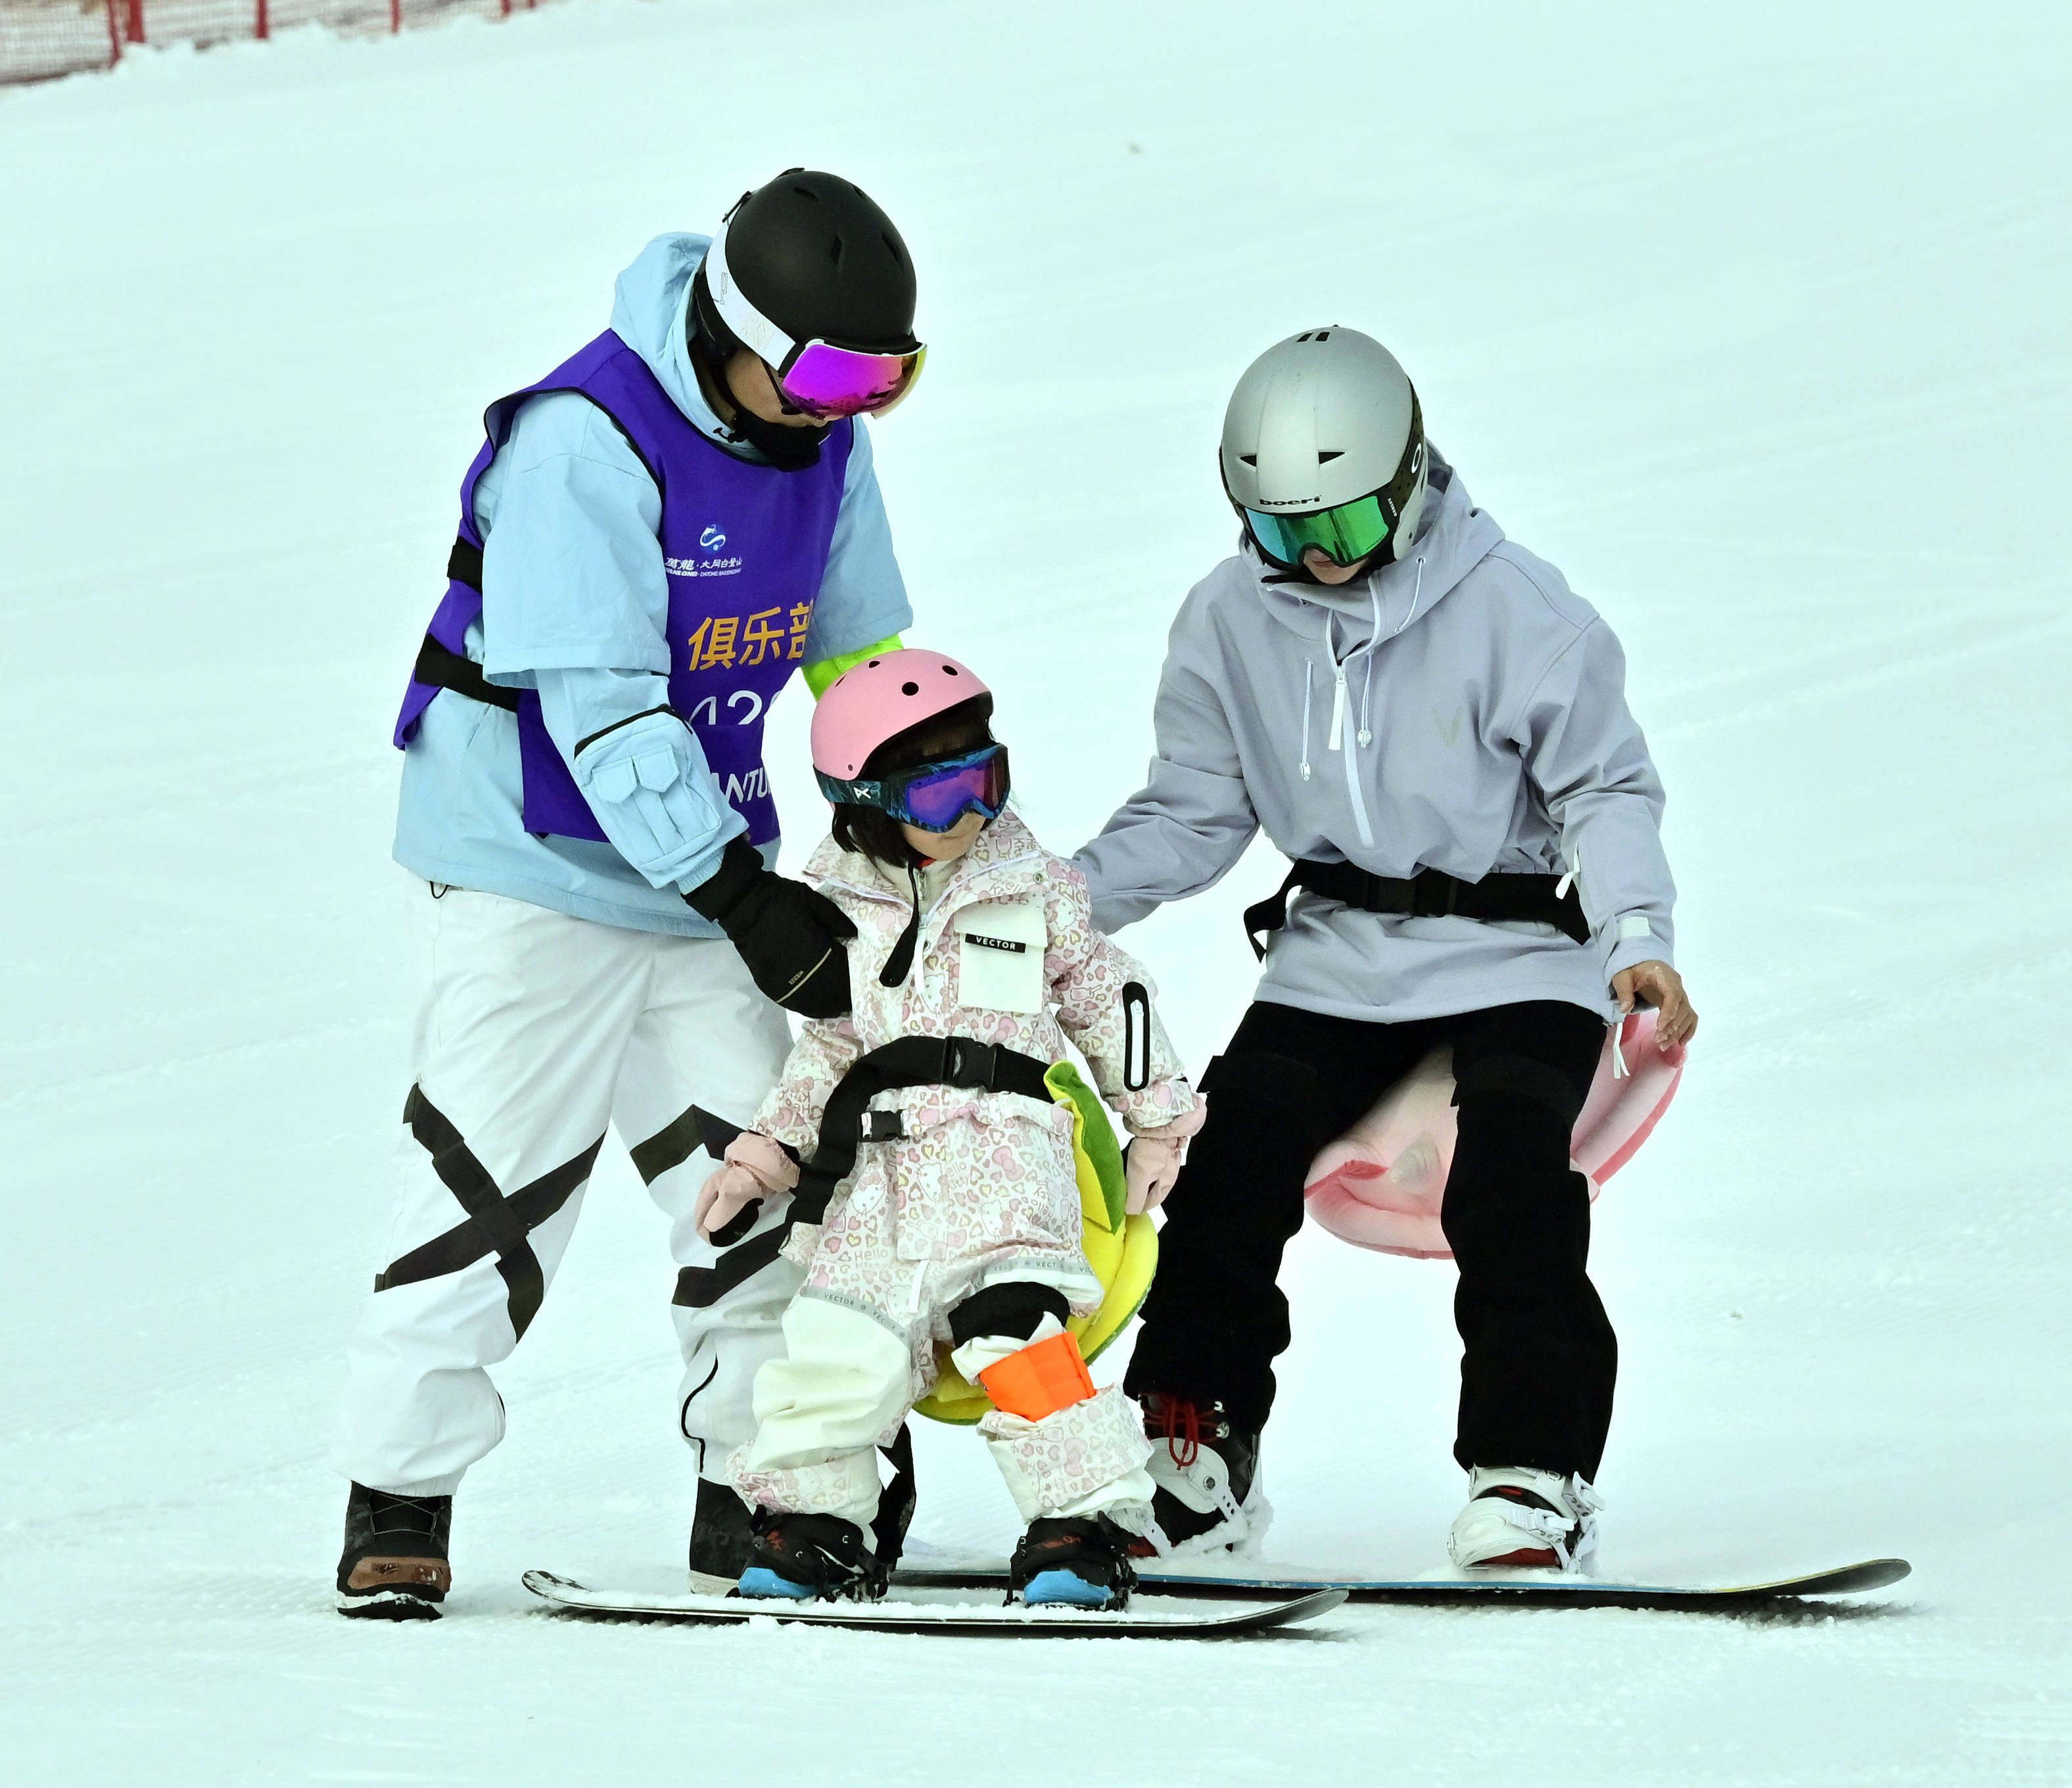 1月13日,在大同市万龙白登山国际滑雪场,缆车载着滑雪爱好者在雪场中